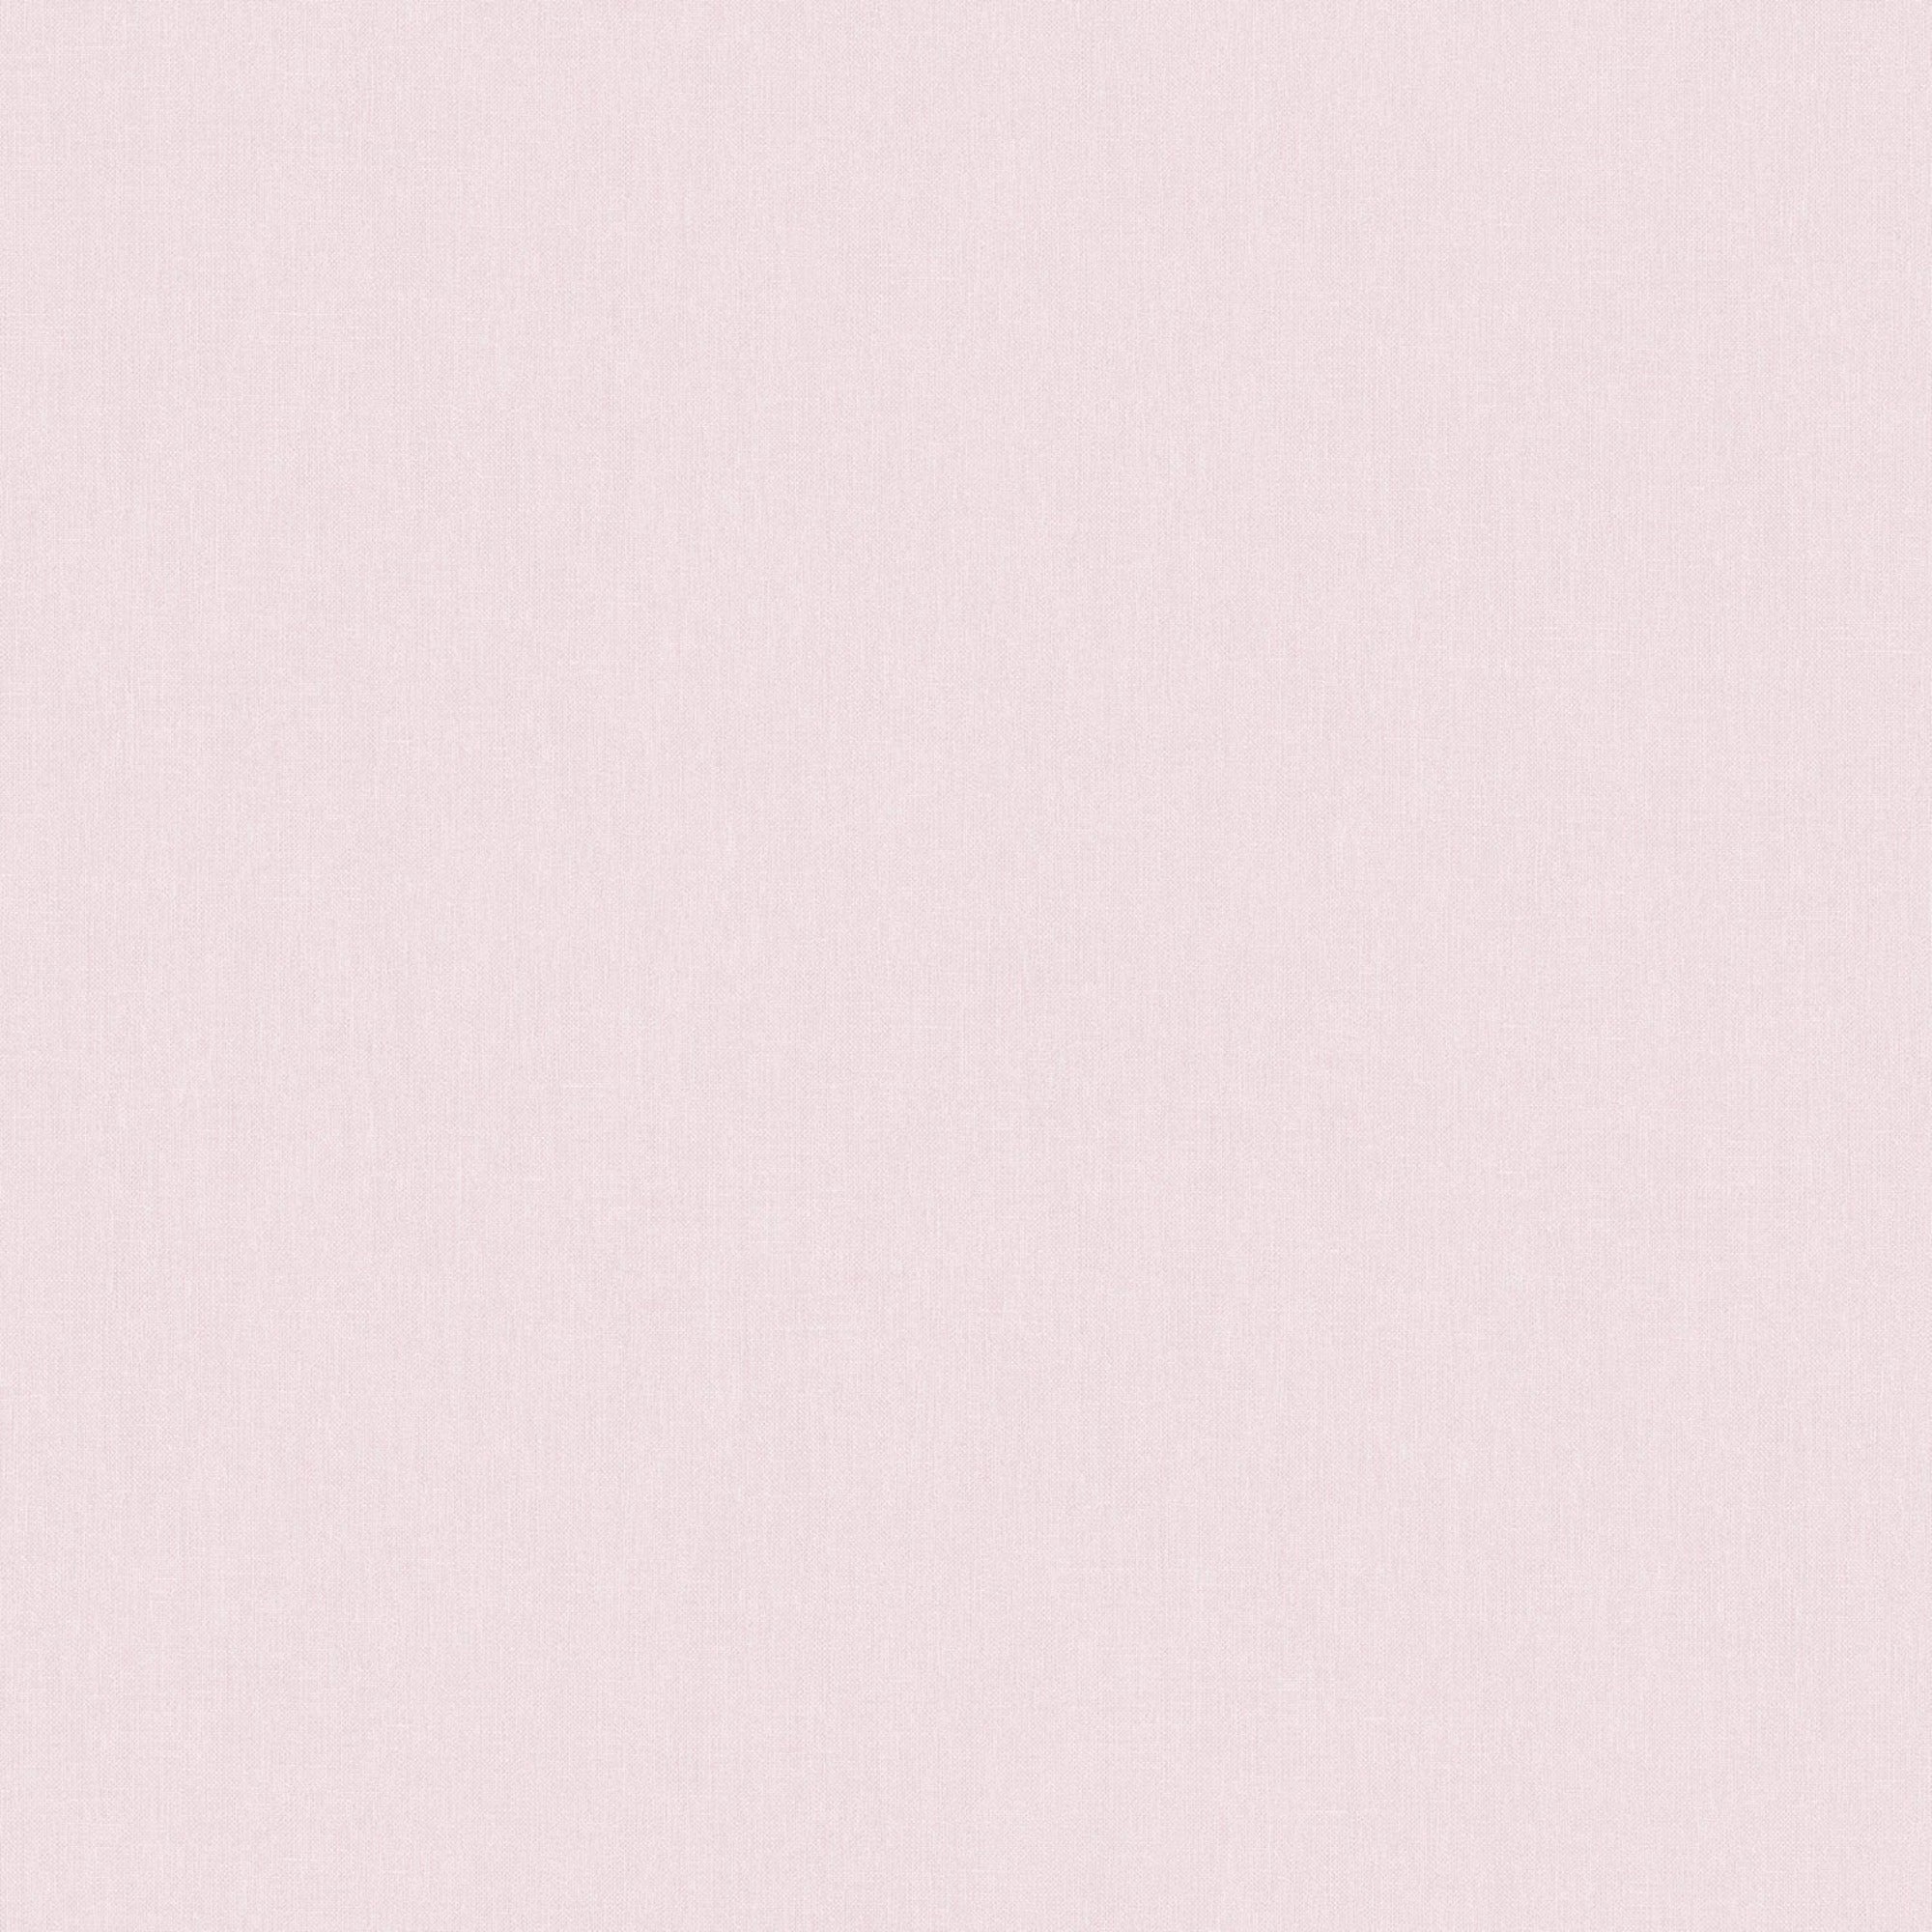 Easeful Texture Pink Wallpaper | WonderWall by Nobletts | #Variant SKU# | Ugepa